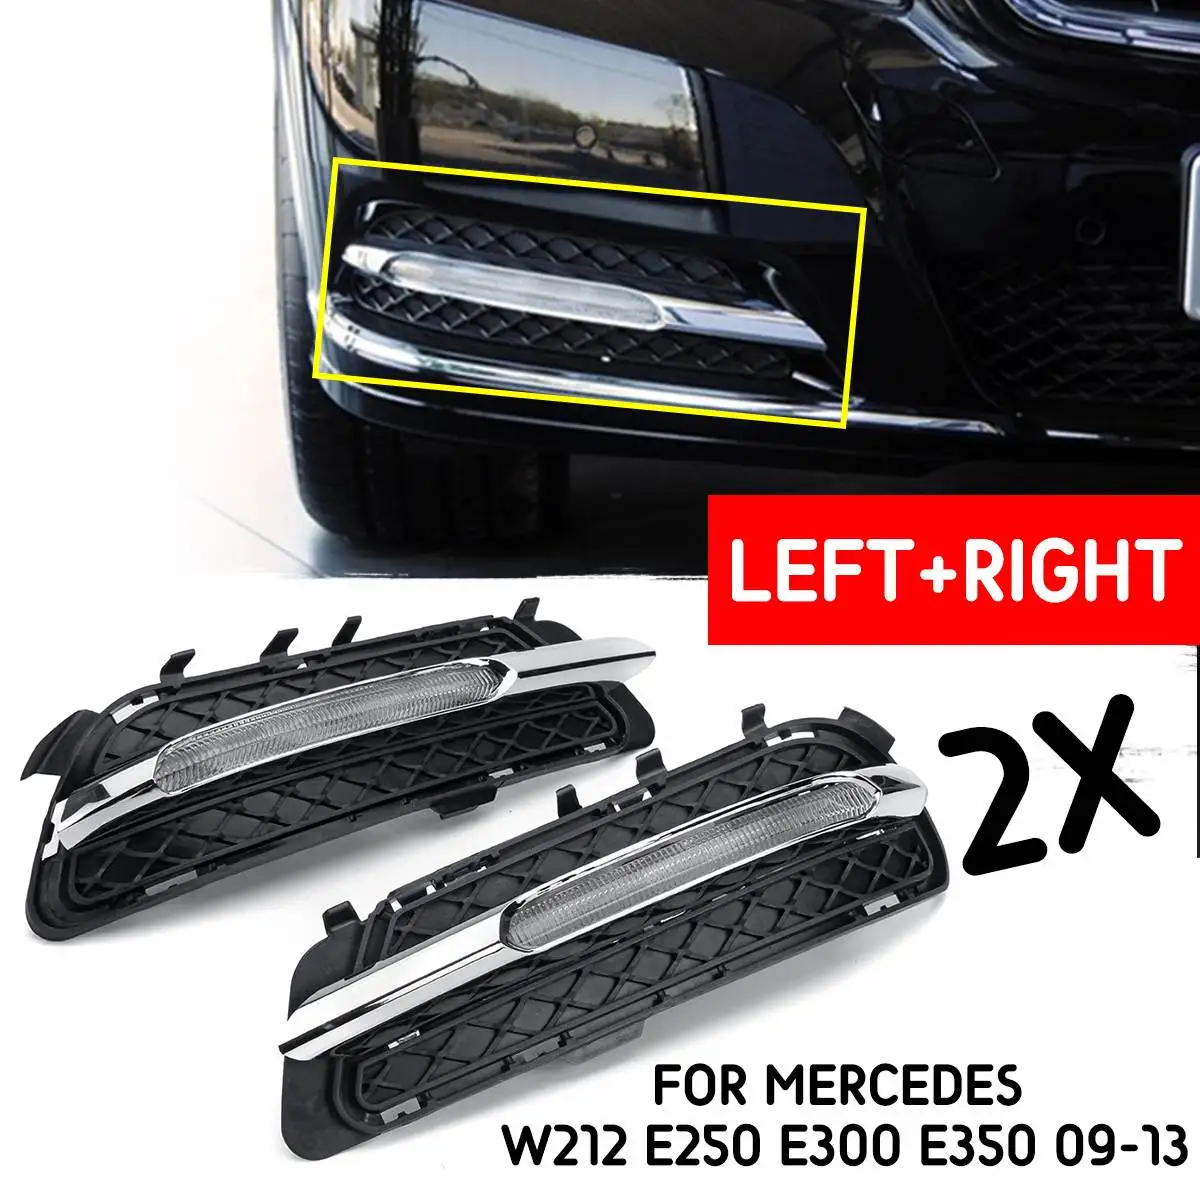 2X LED Daytime Running Light Fog Lamp DRL For Mercedes W212 E250 E300 E350 09-13